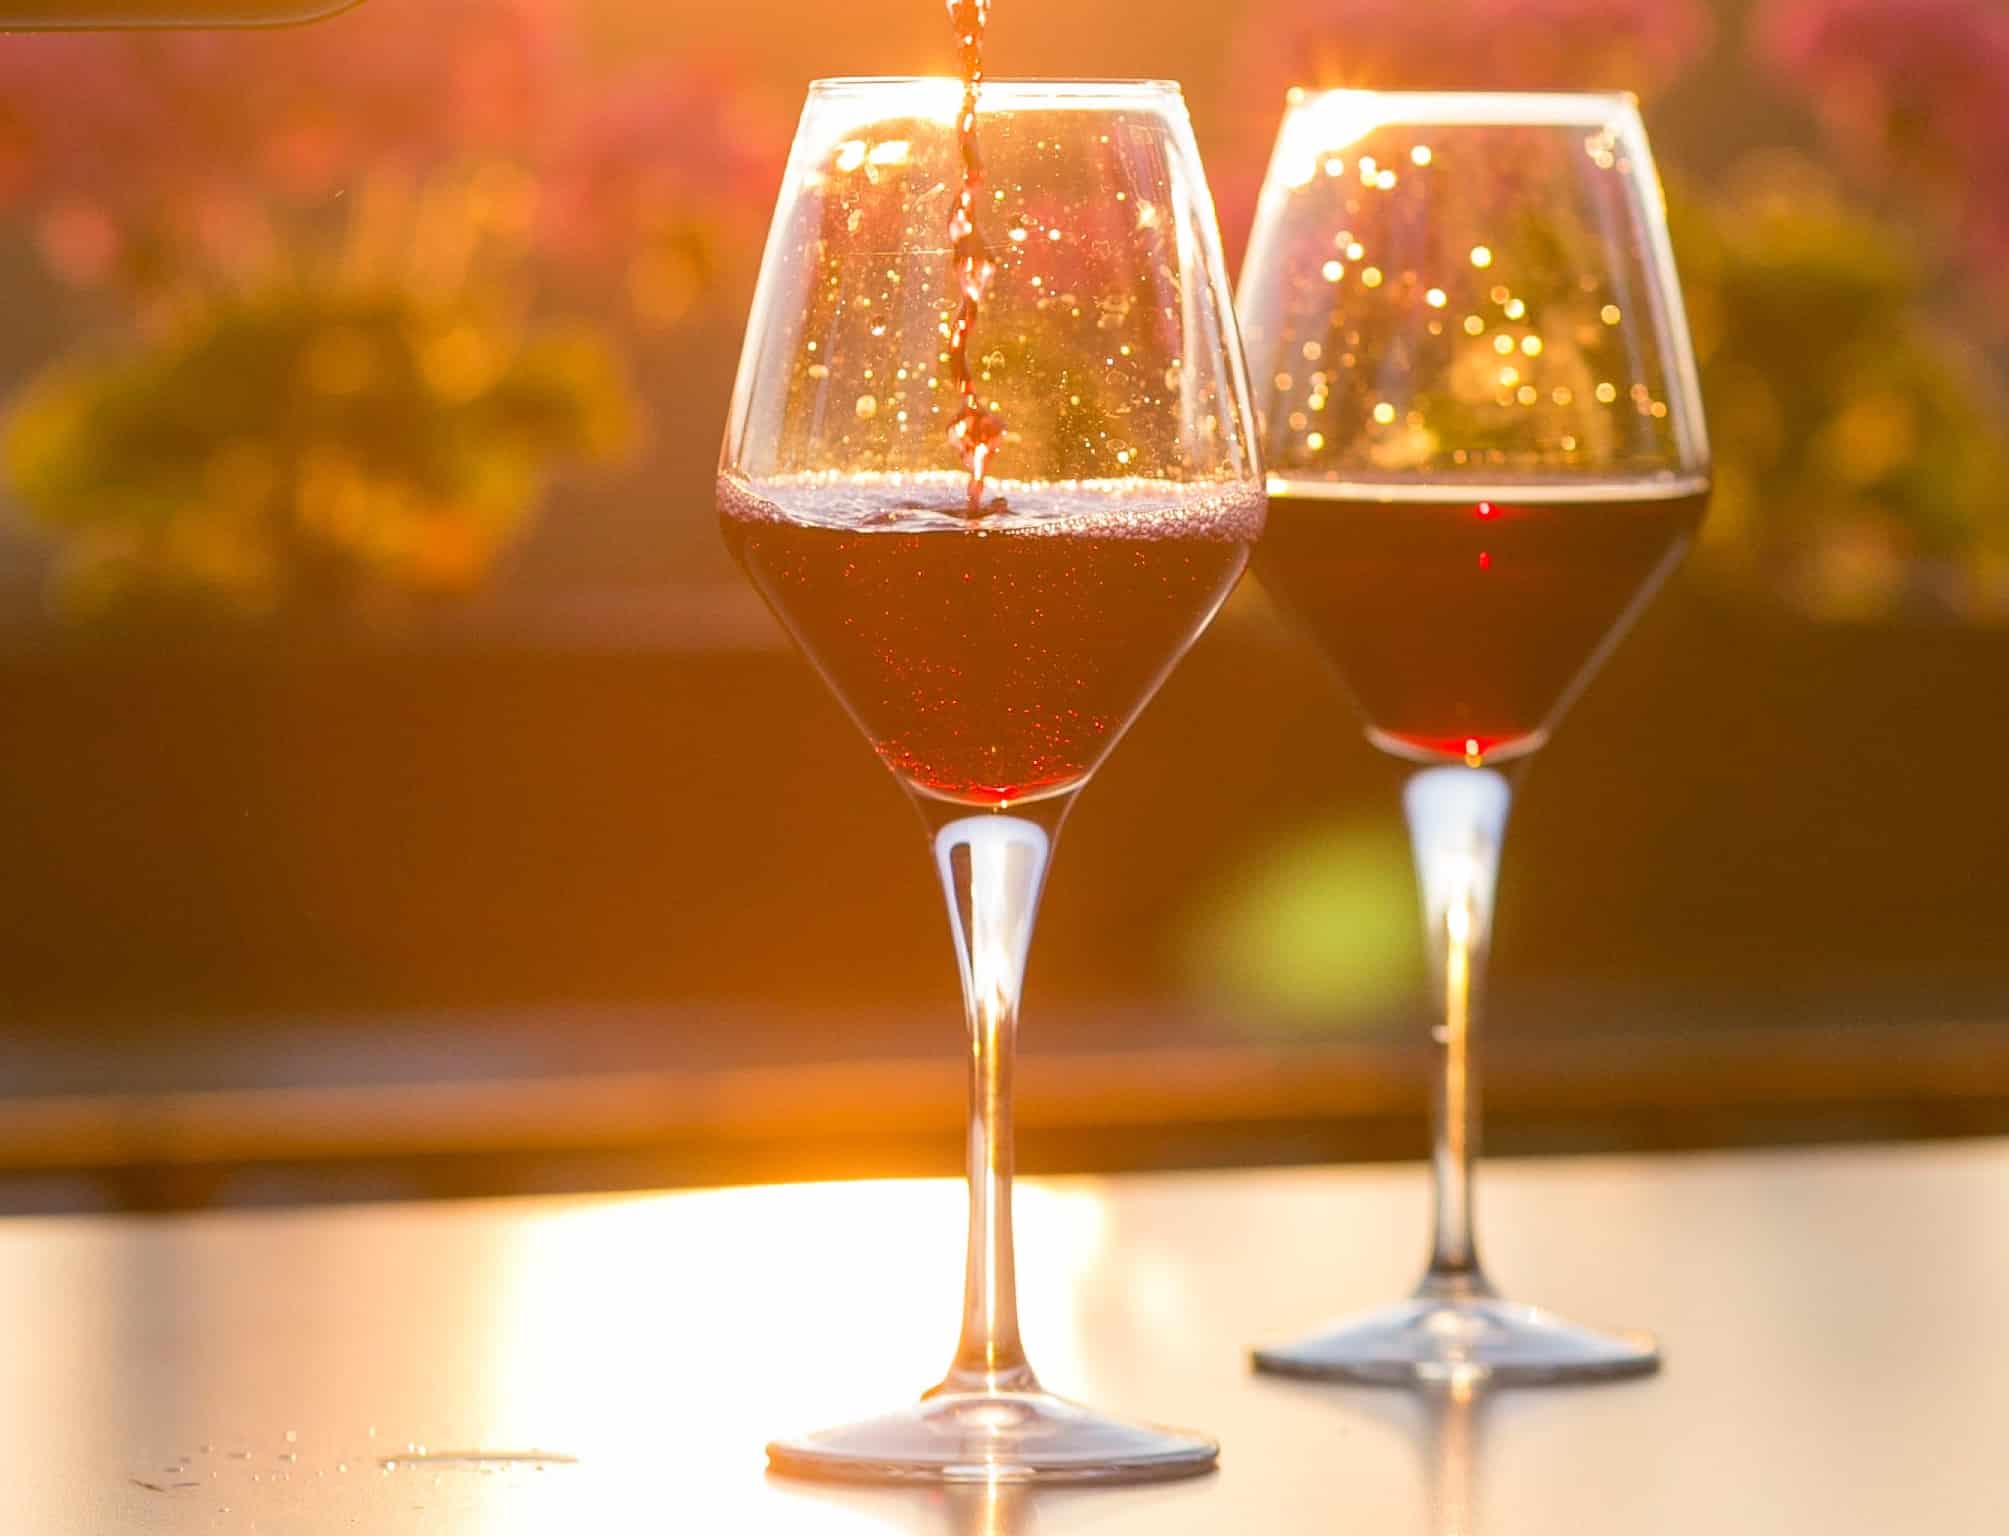 Sundowner beim Weingärtner in Esslingen - Rotweingläser im Sonnenlicht